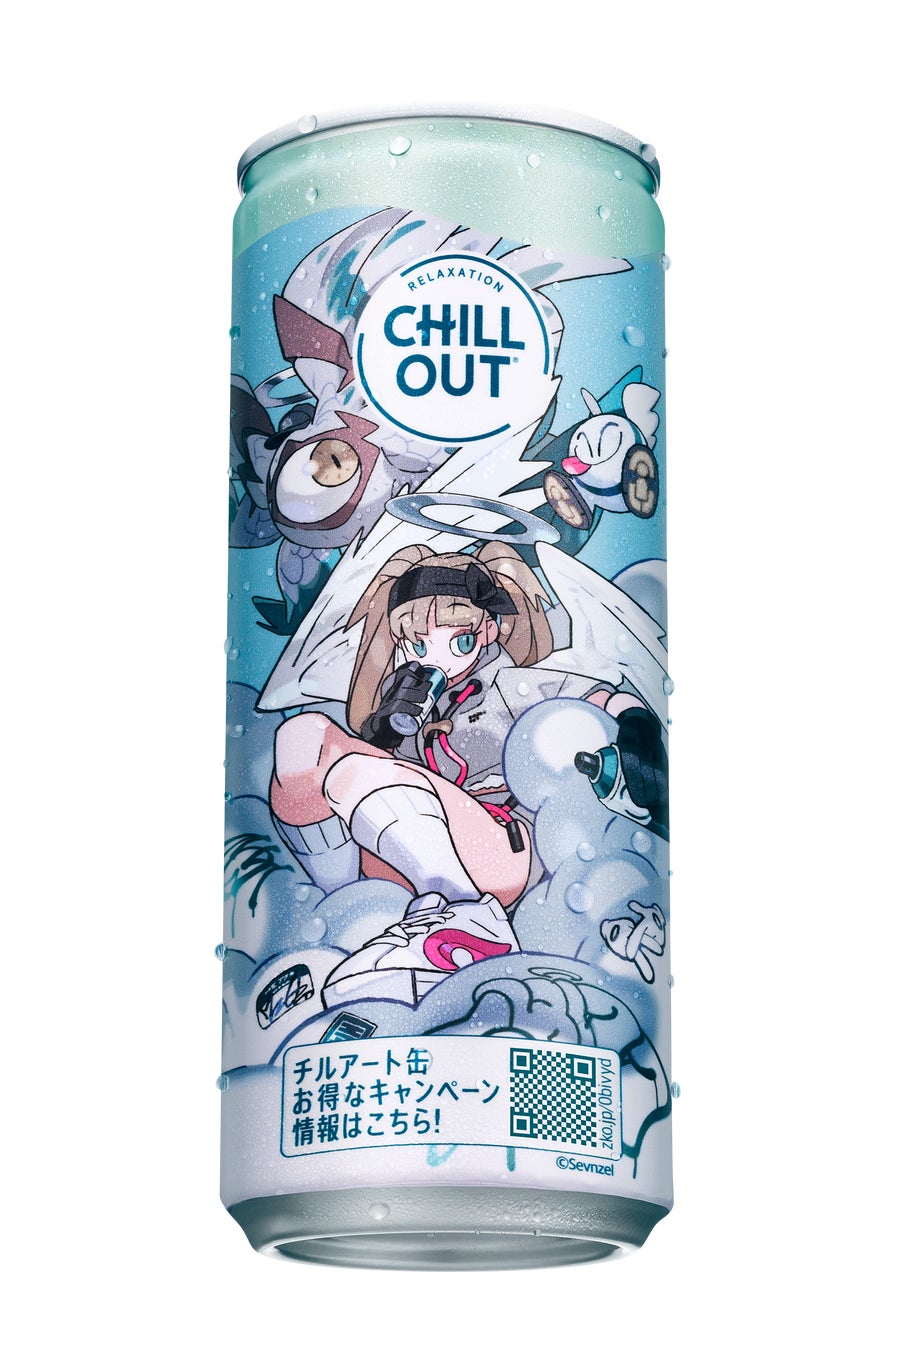 日本発のリラクゼーションドリンク「CHILL OUT」がストレスシーンに着目「ストレスのない世界って、サイコー...